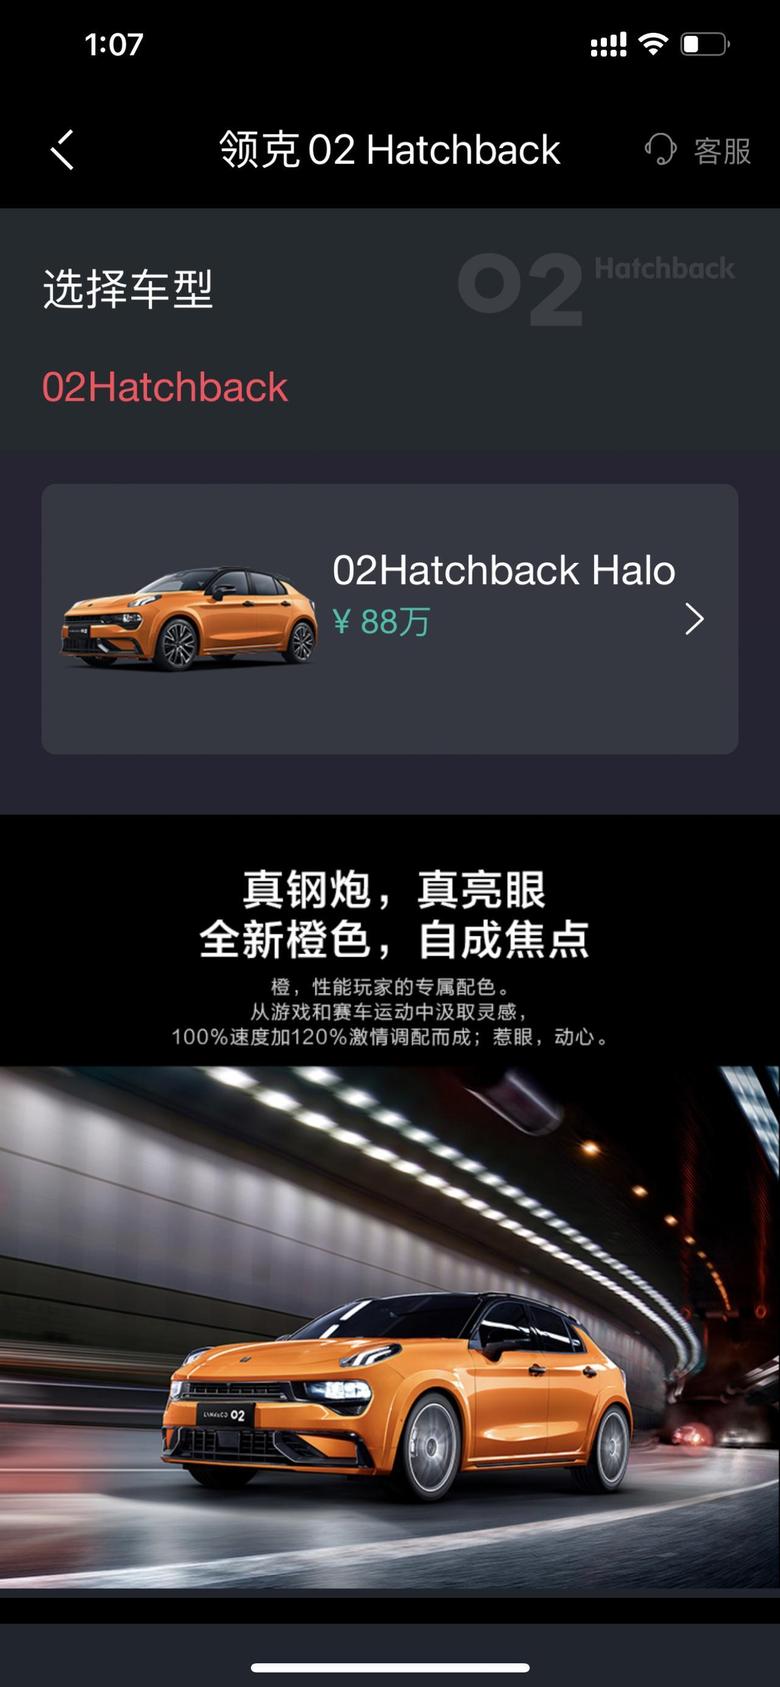 领克02 hatchback02hatchback，听说今天开抢，这价格是系统错误吗